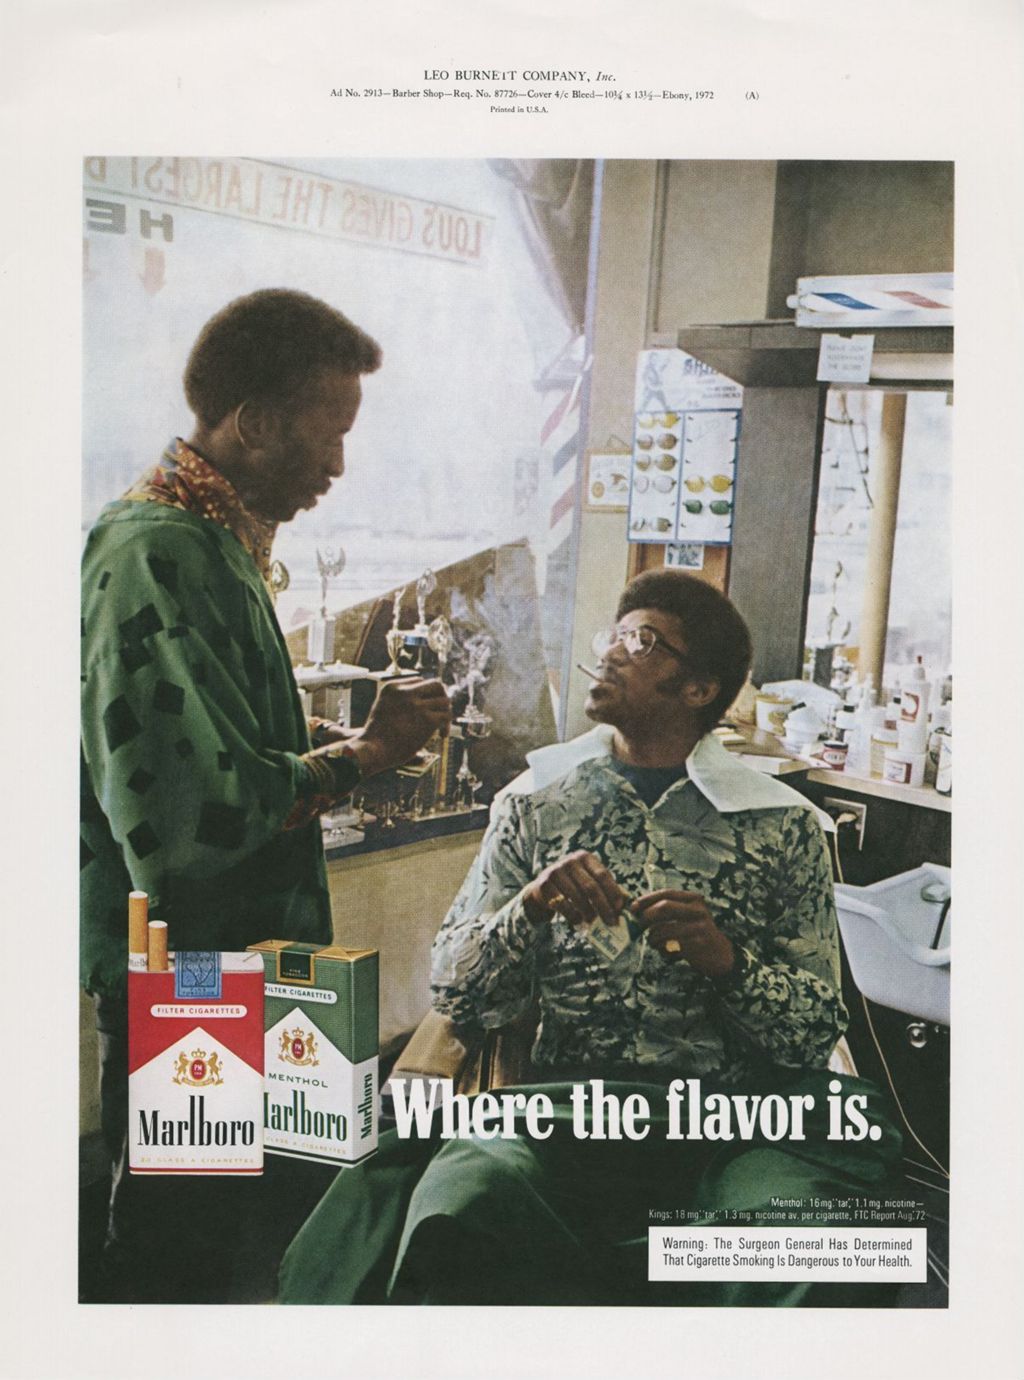 Where the flavor is., Marlboro cigarette advertisement